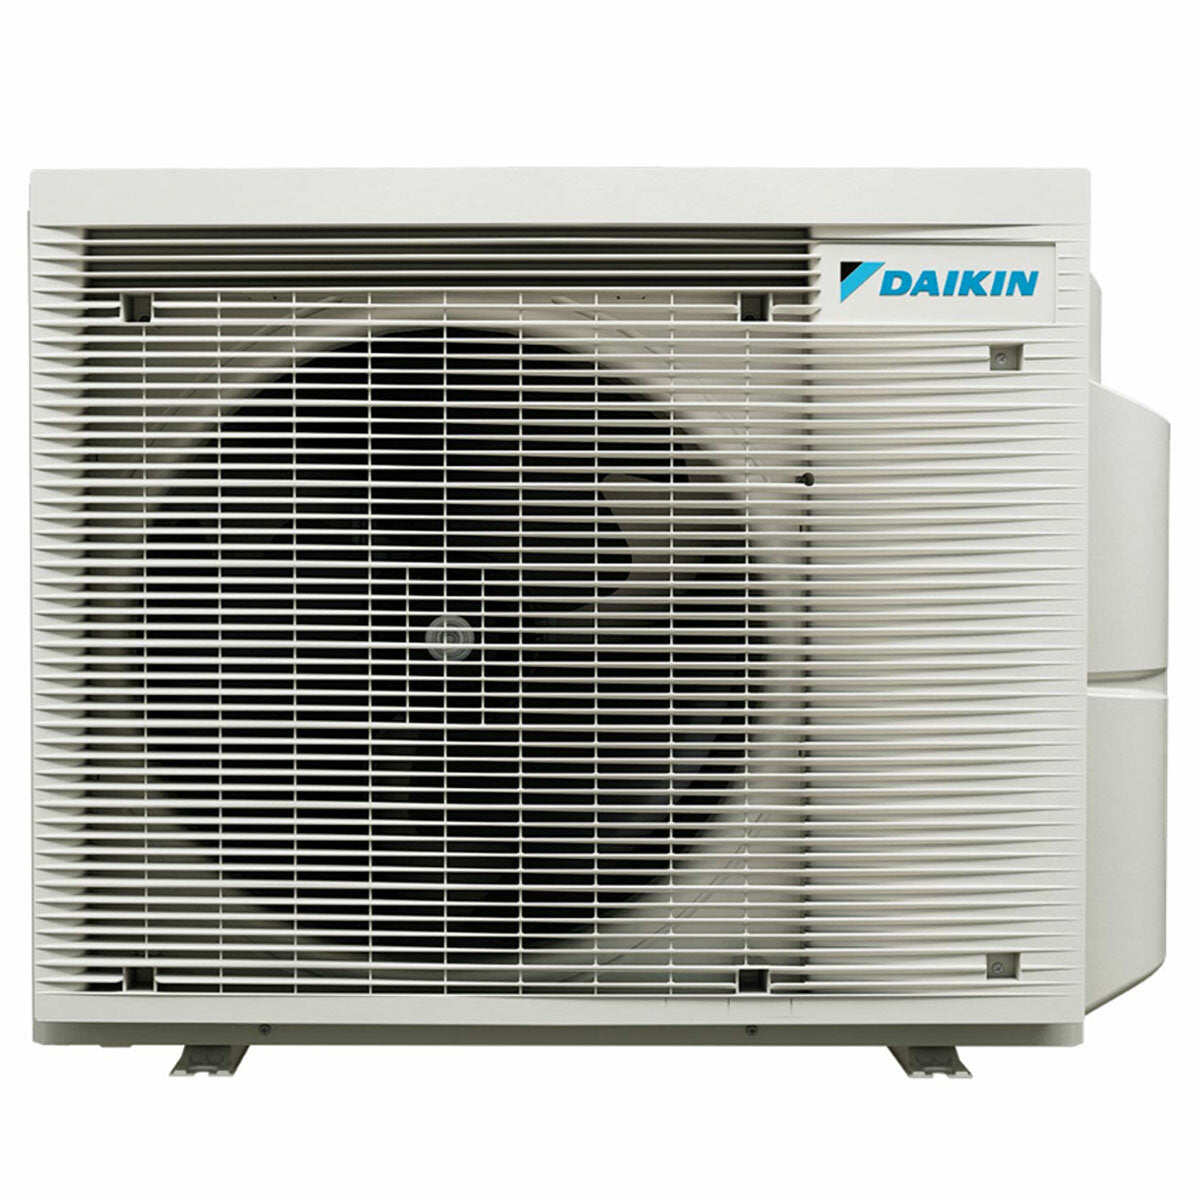 Daikin Stylish Trial Split Klimaanlage 9000 + 9000 + 15000 BTU Inverter A++ WLAN Außengerät 6,8 kW